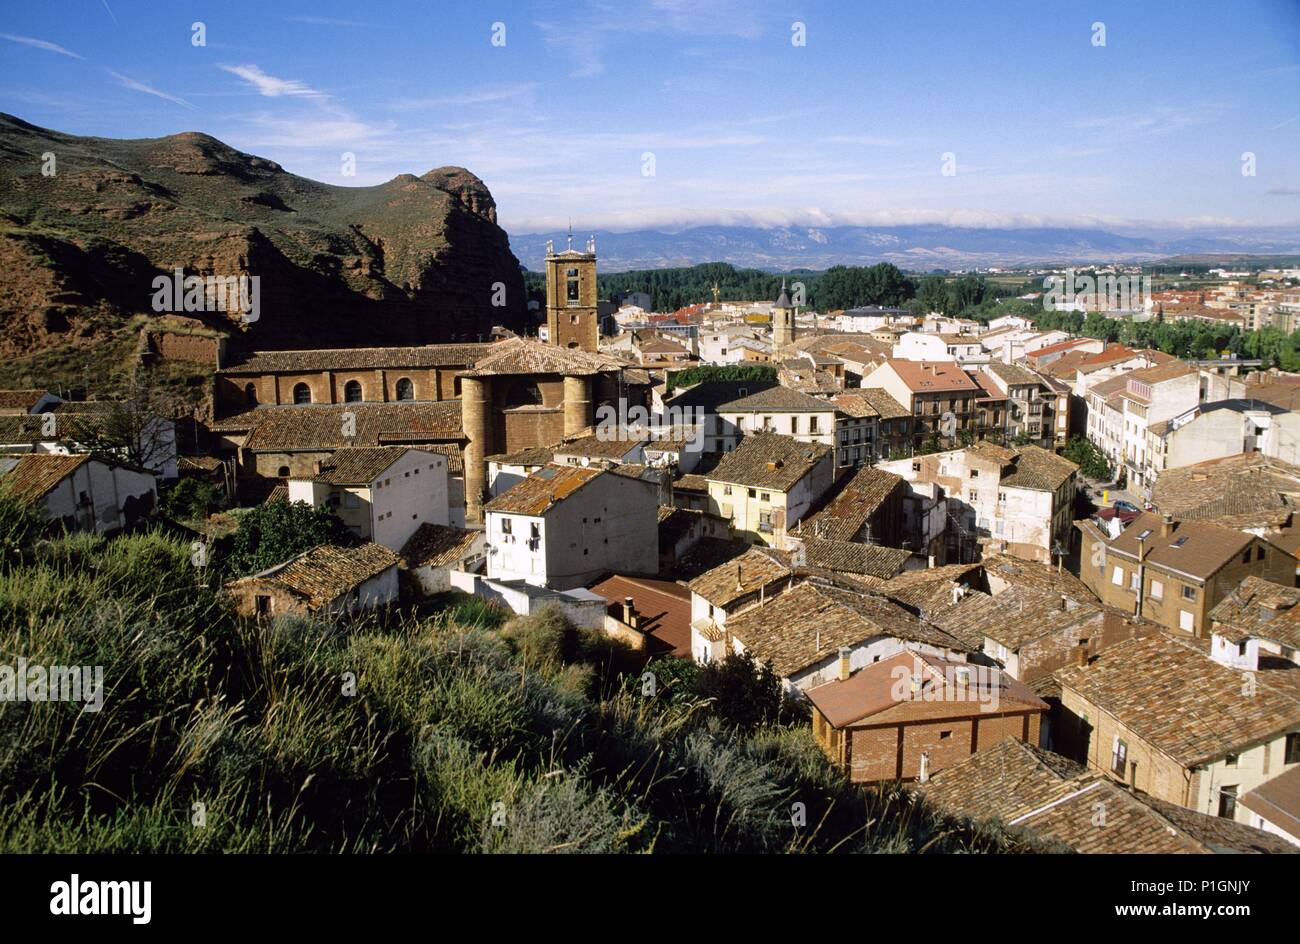 Nájera; vista del pueblo y monasterio de Santa María La Real (Camino de Santiago). Stock Photo